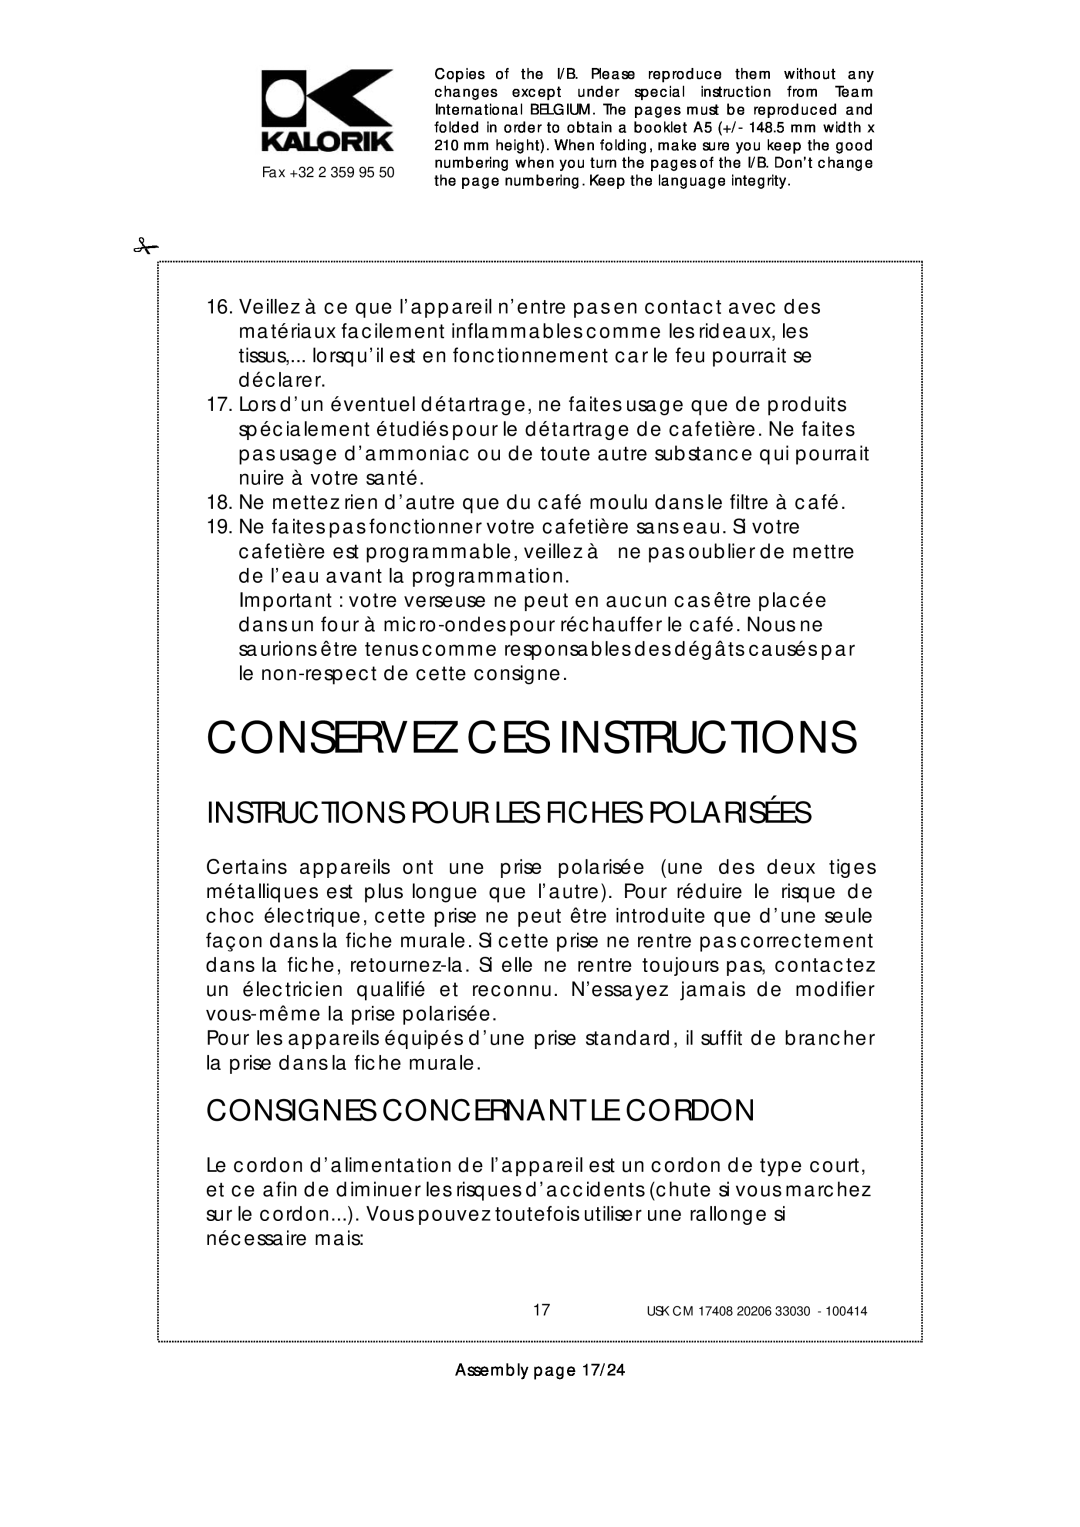 Kalorik USK CM 20206 Conservez Ces Instructions, Instructions Pour Les Fiches Polarisées, Consignes Concernant Le Cordon 